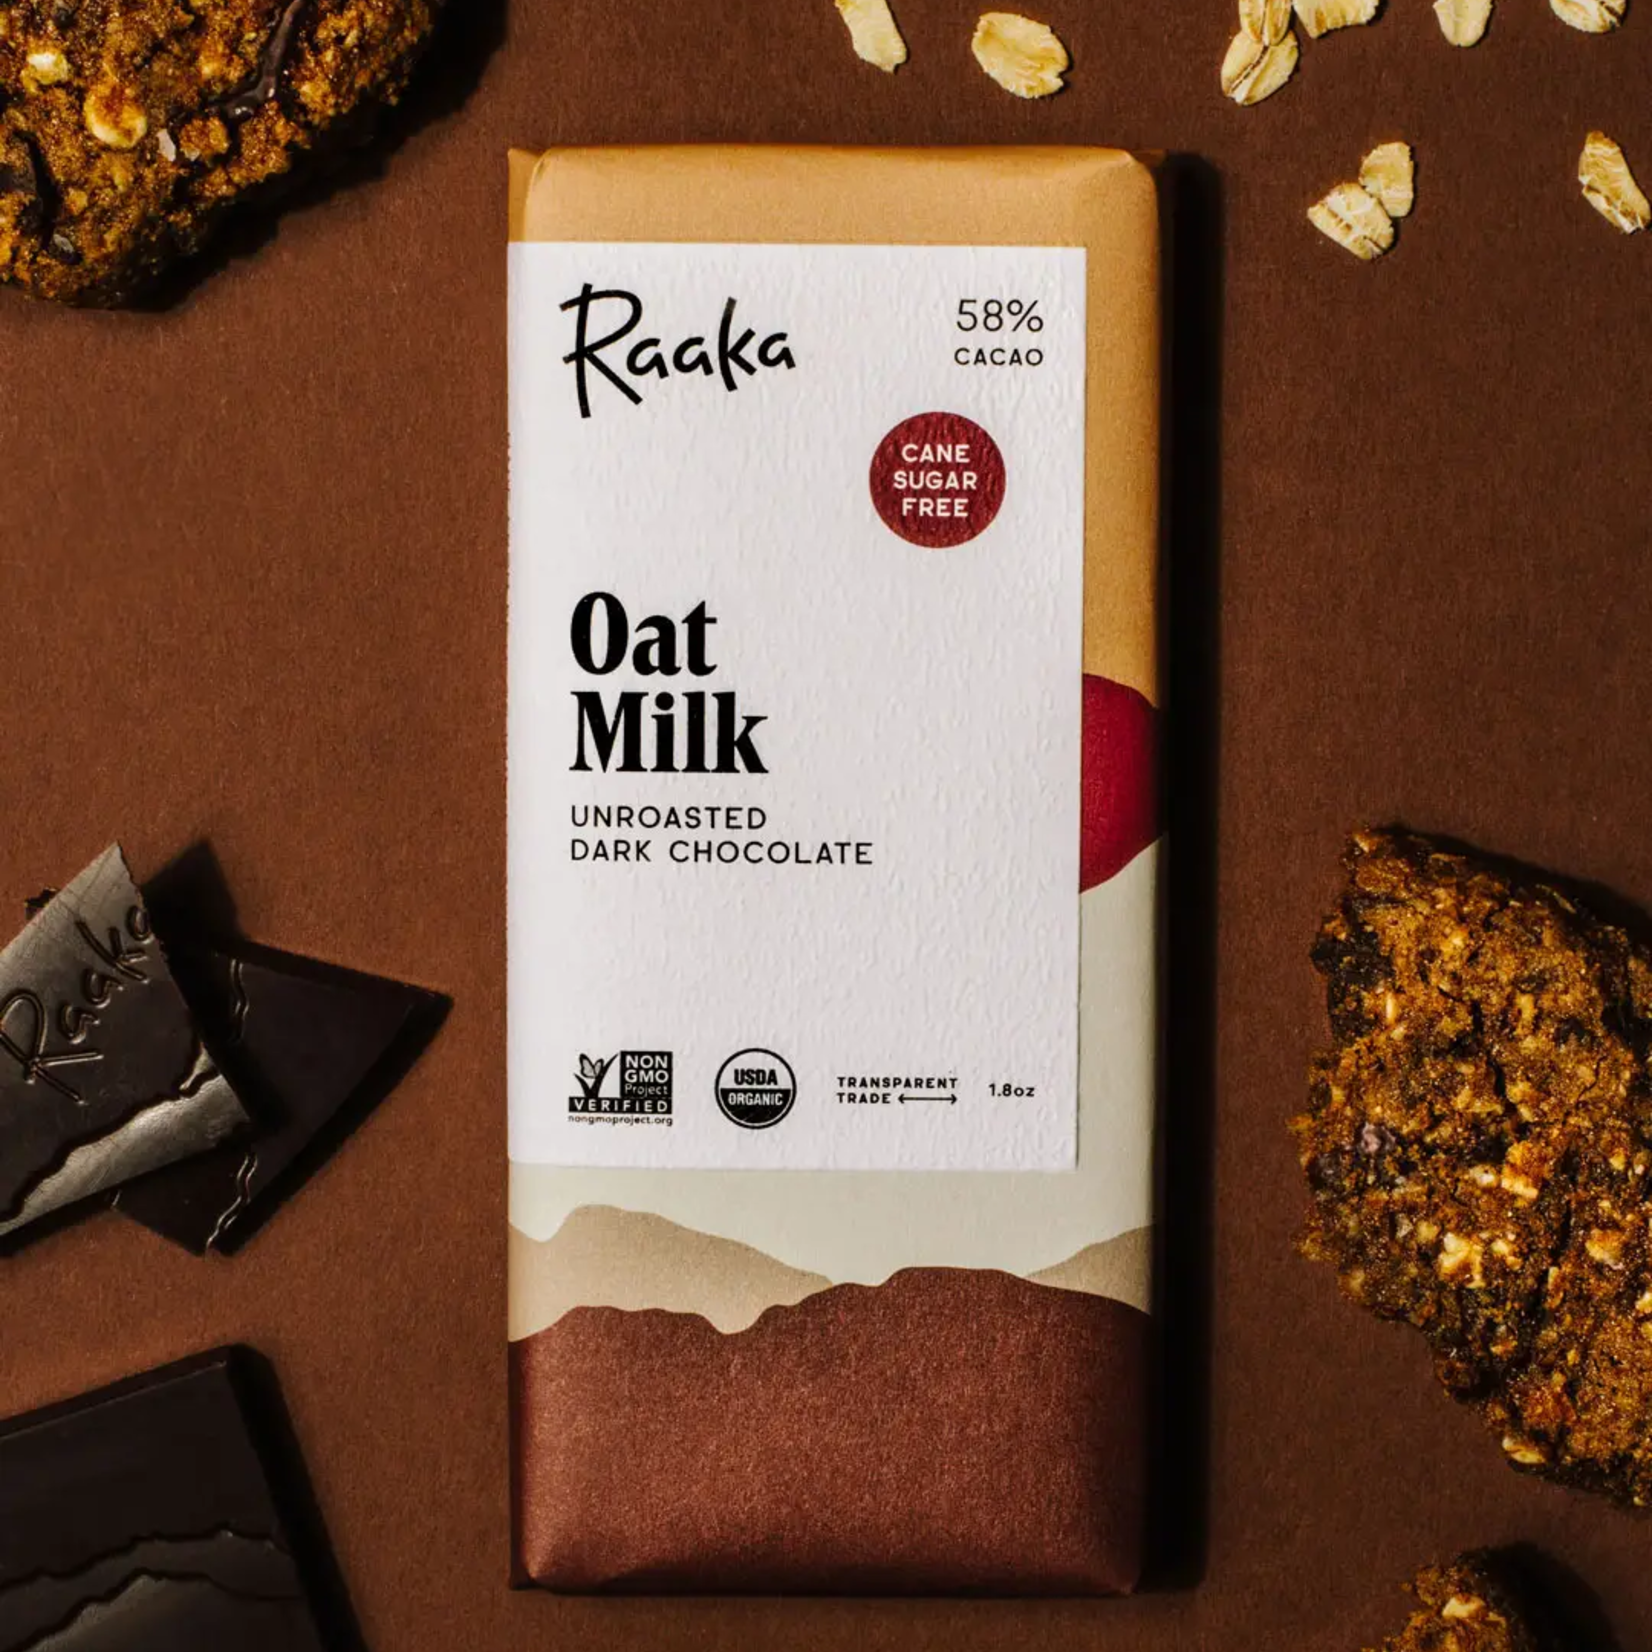 Raaka oat milk